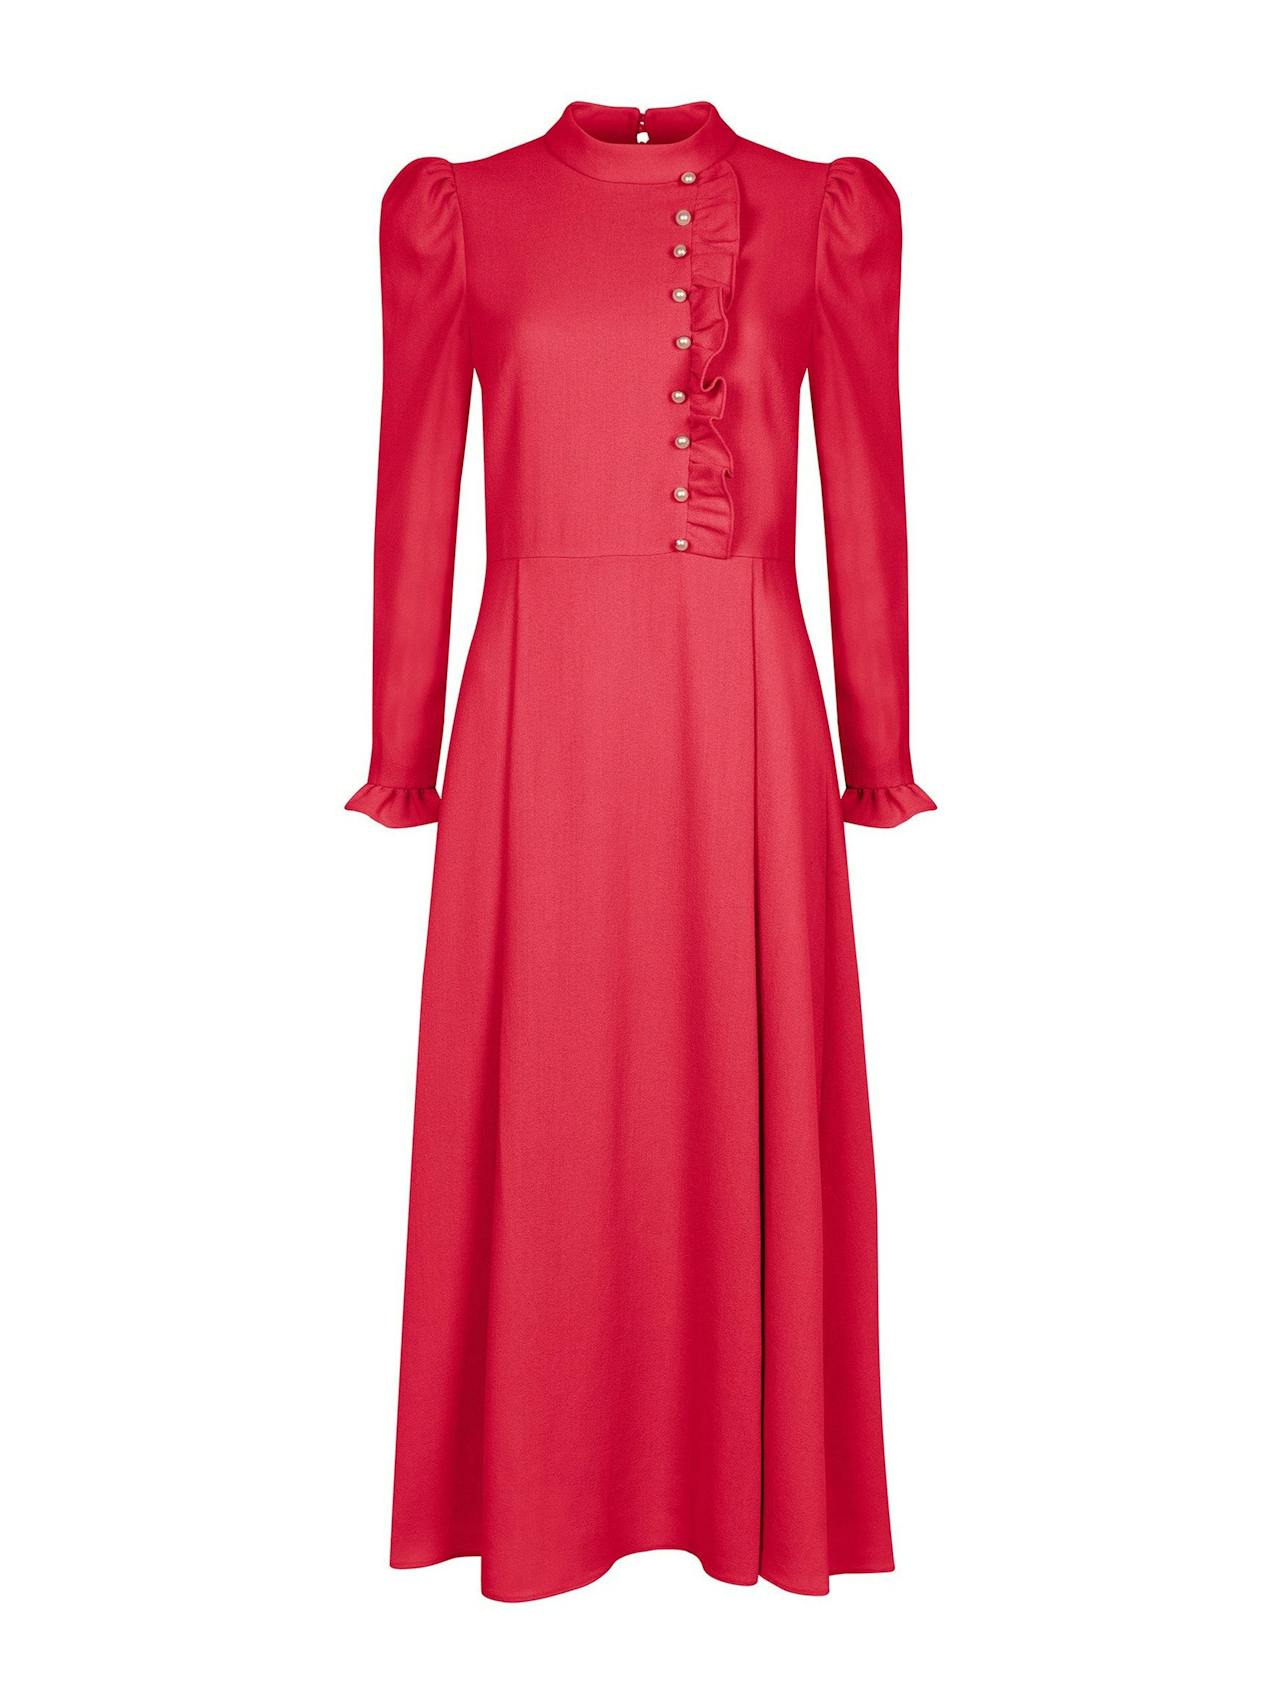 Crimson Christina dress